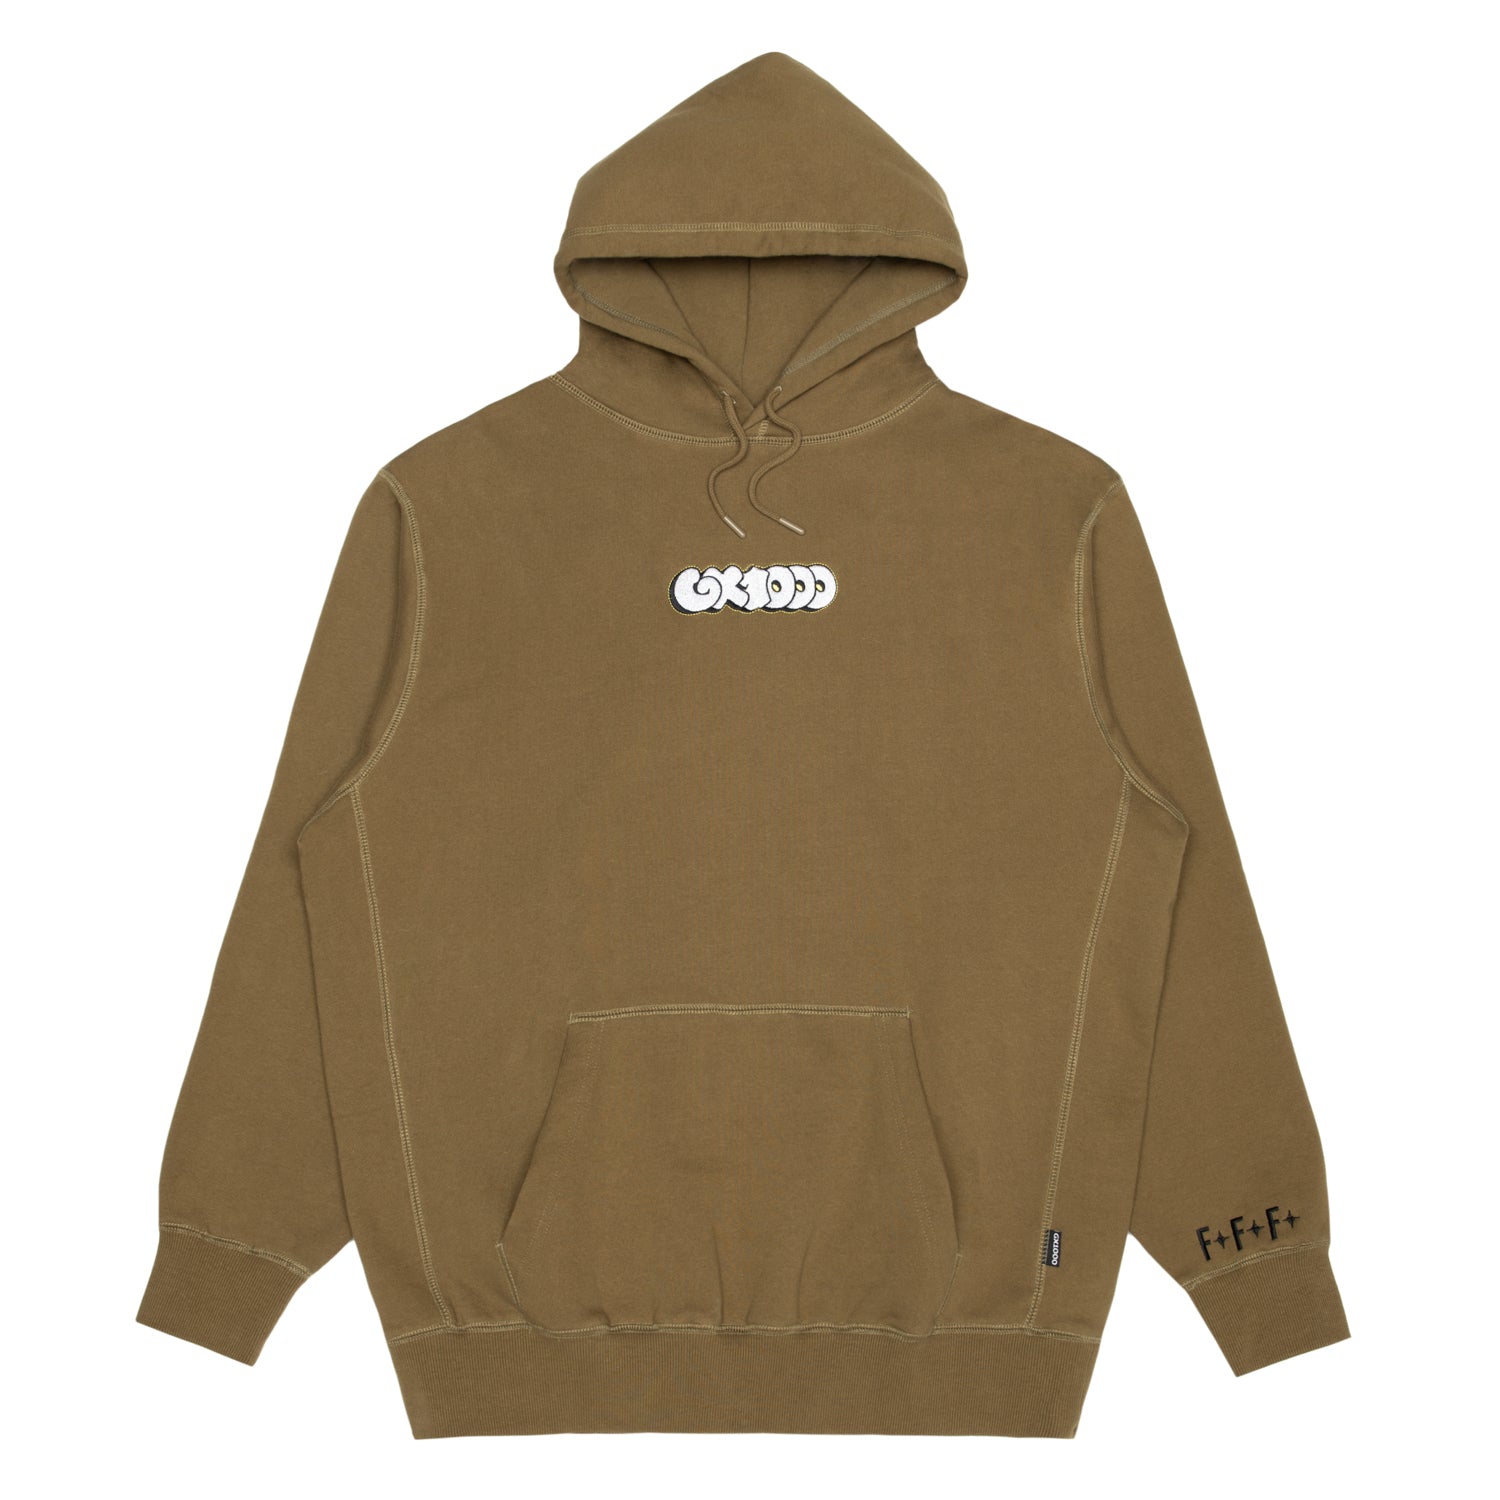 gx1000 hoodie sサイズ